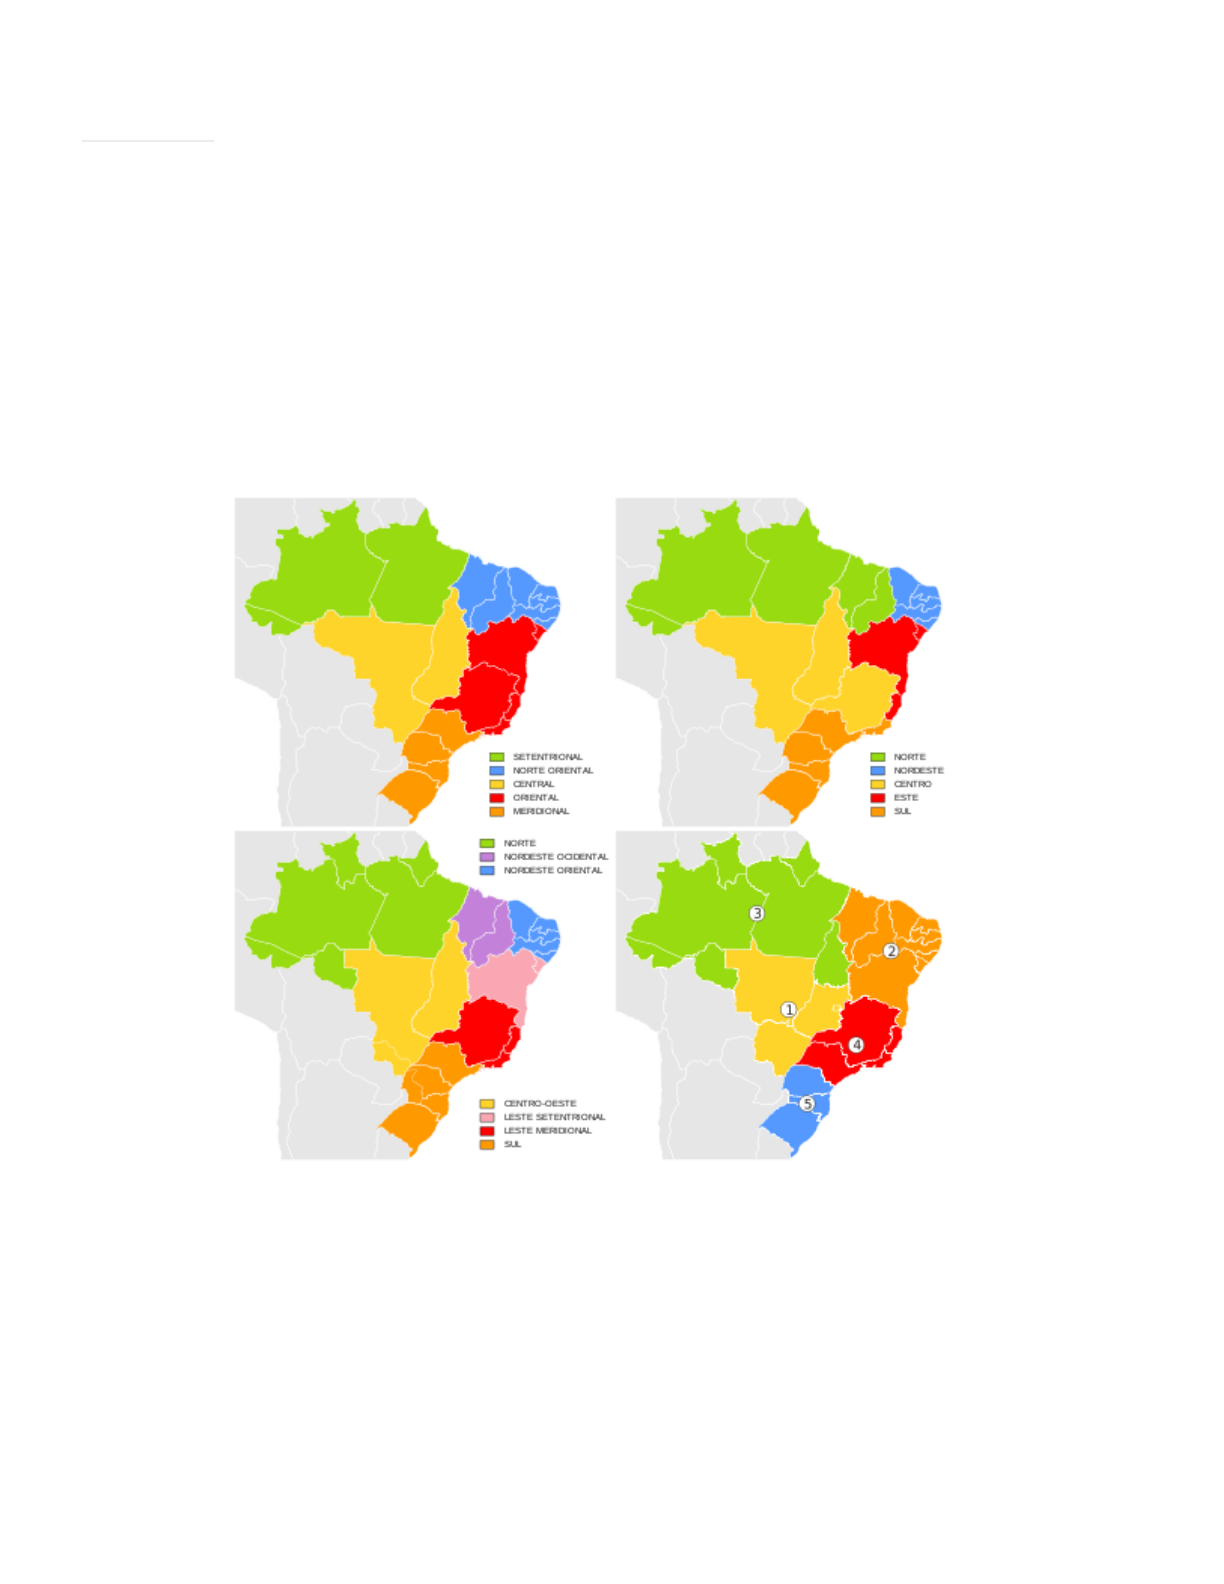 Goiás – Wikipédia, a enciclopédia livre